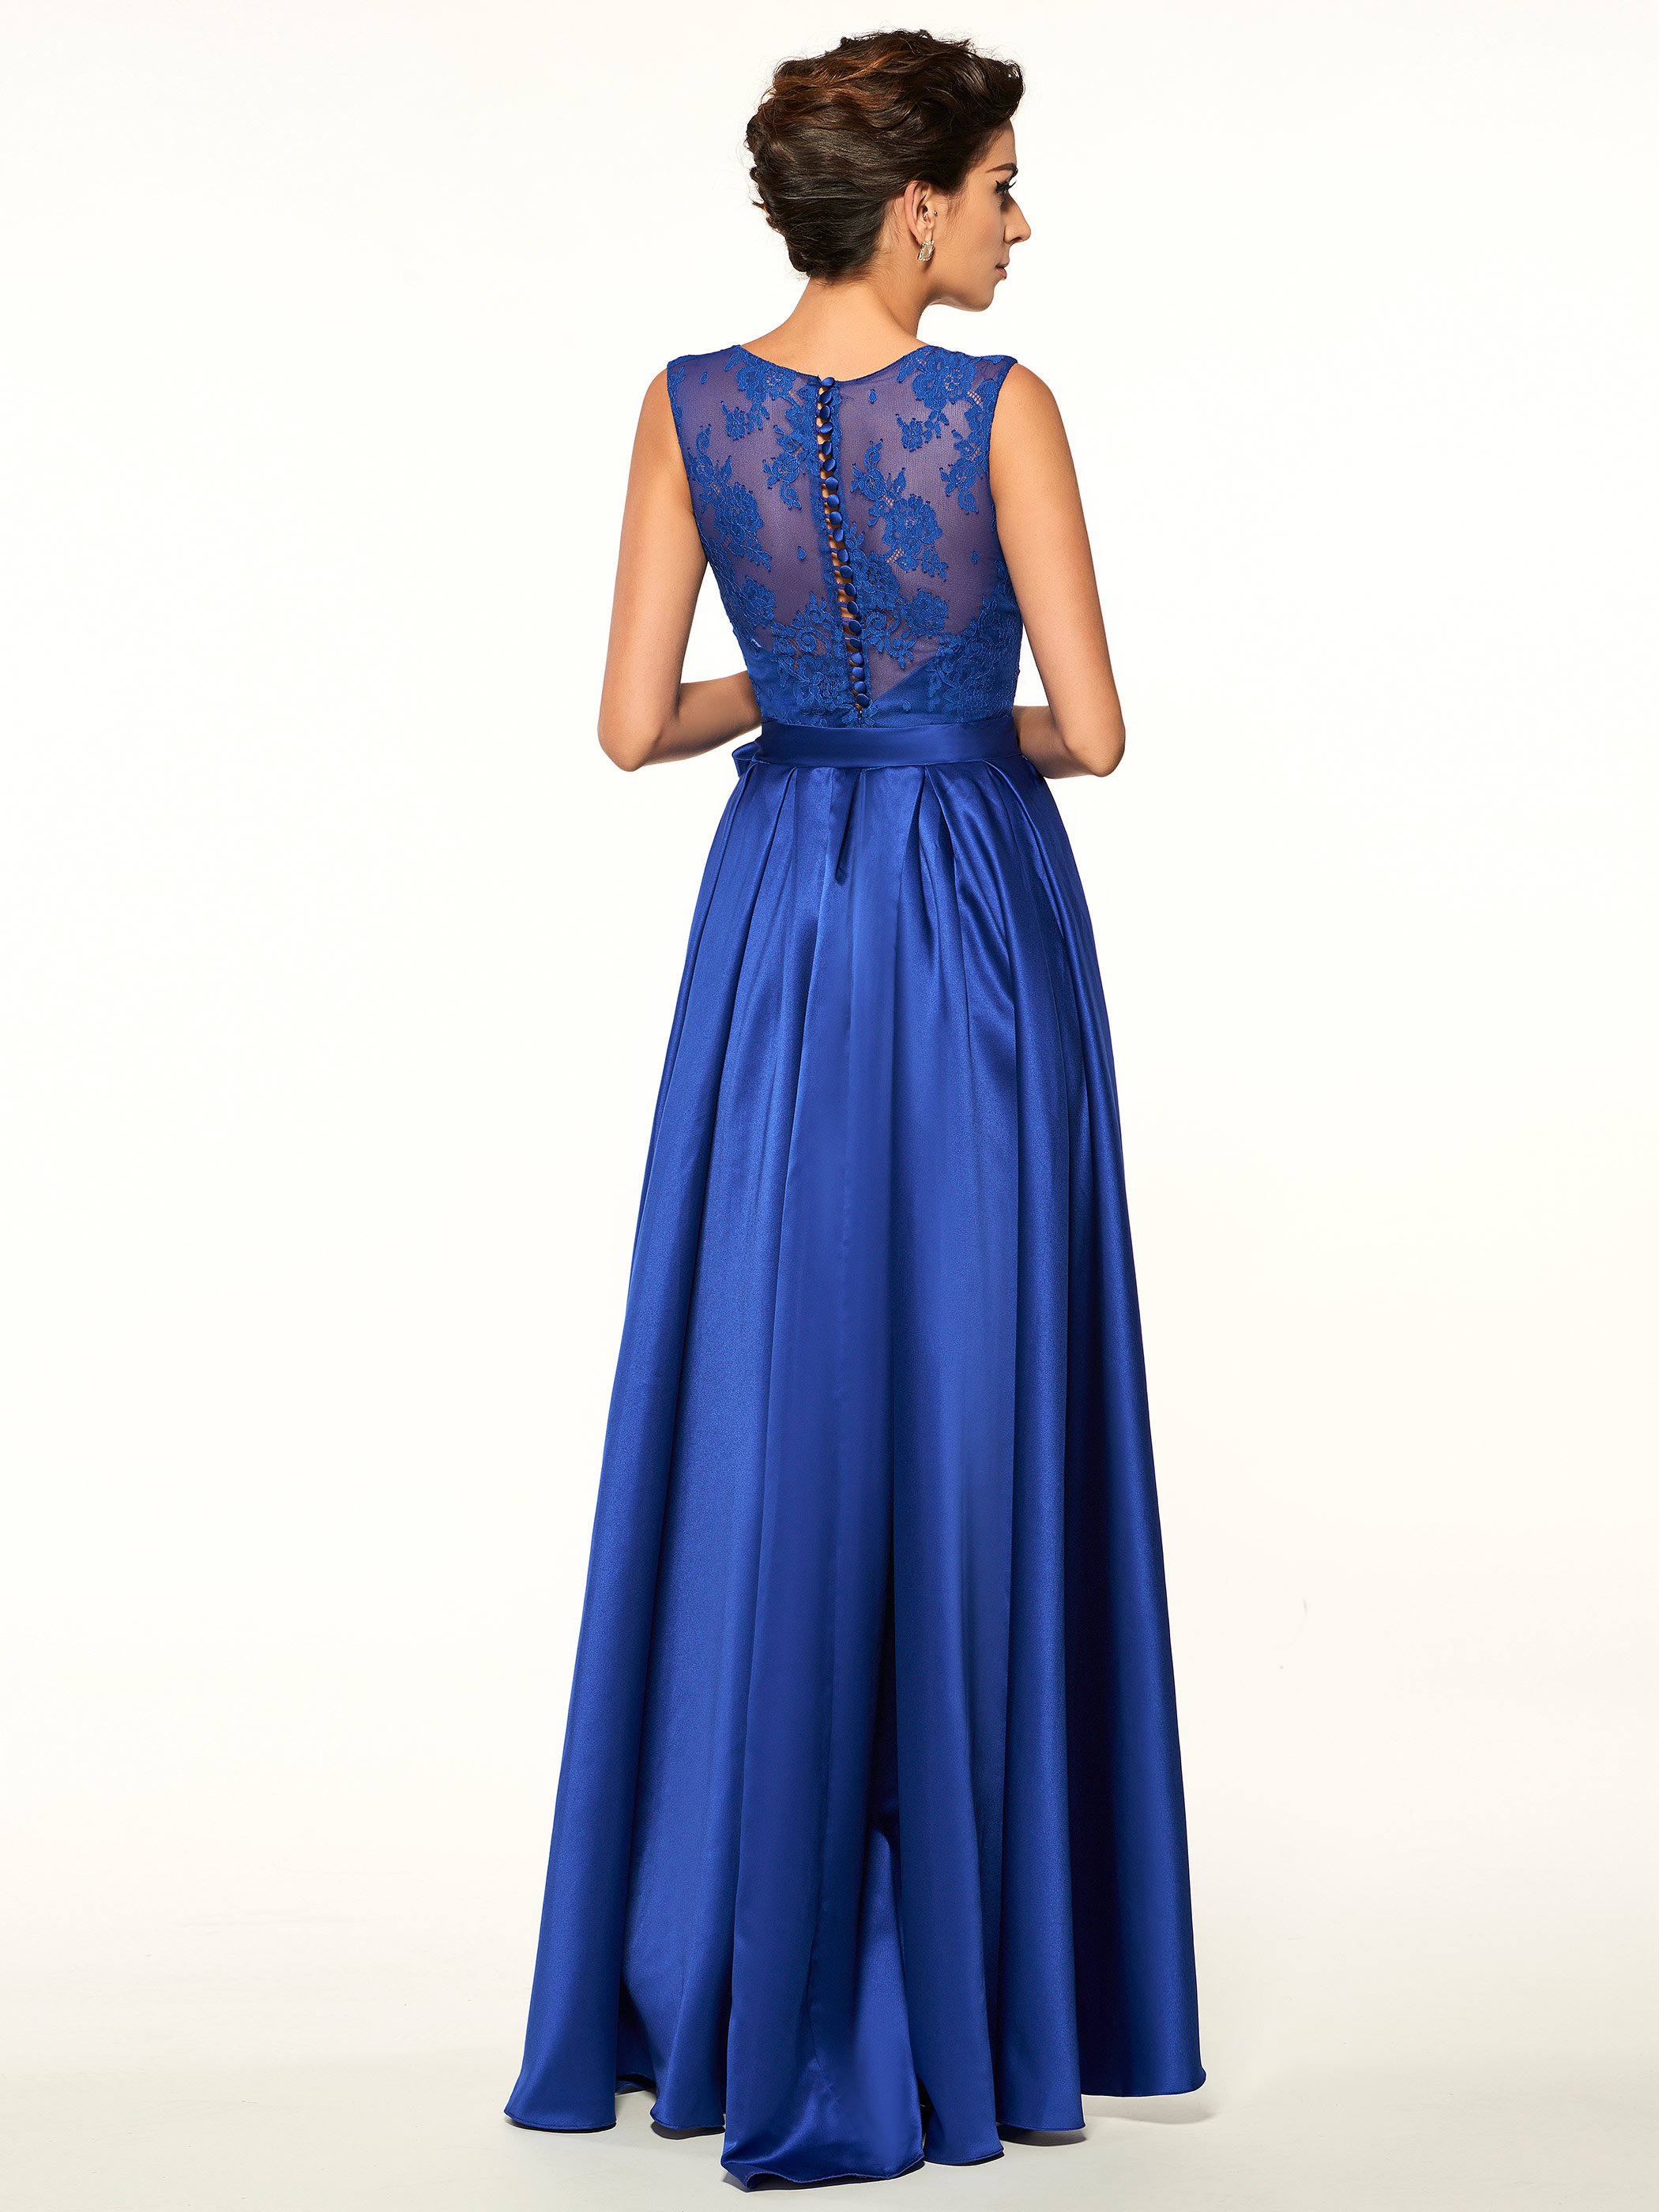 Jewel Button Asymmetry Sleeveless Evening Dress Blue Long Dress Mother of the Bride Dress Wedding Guest Dress